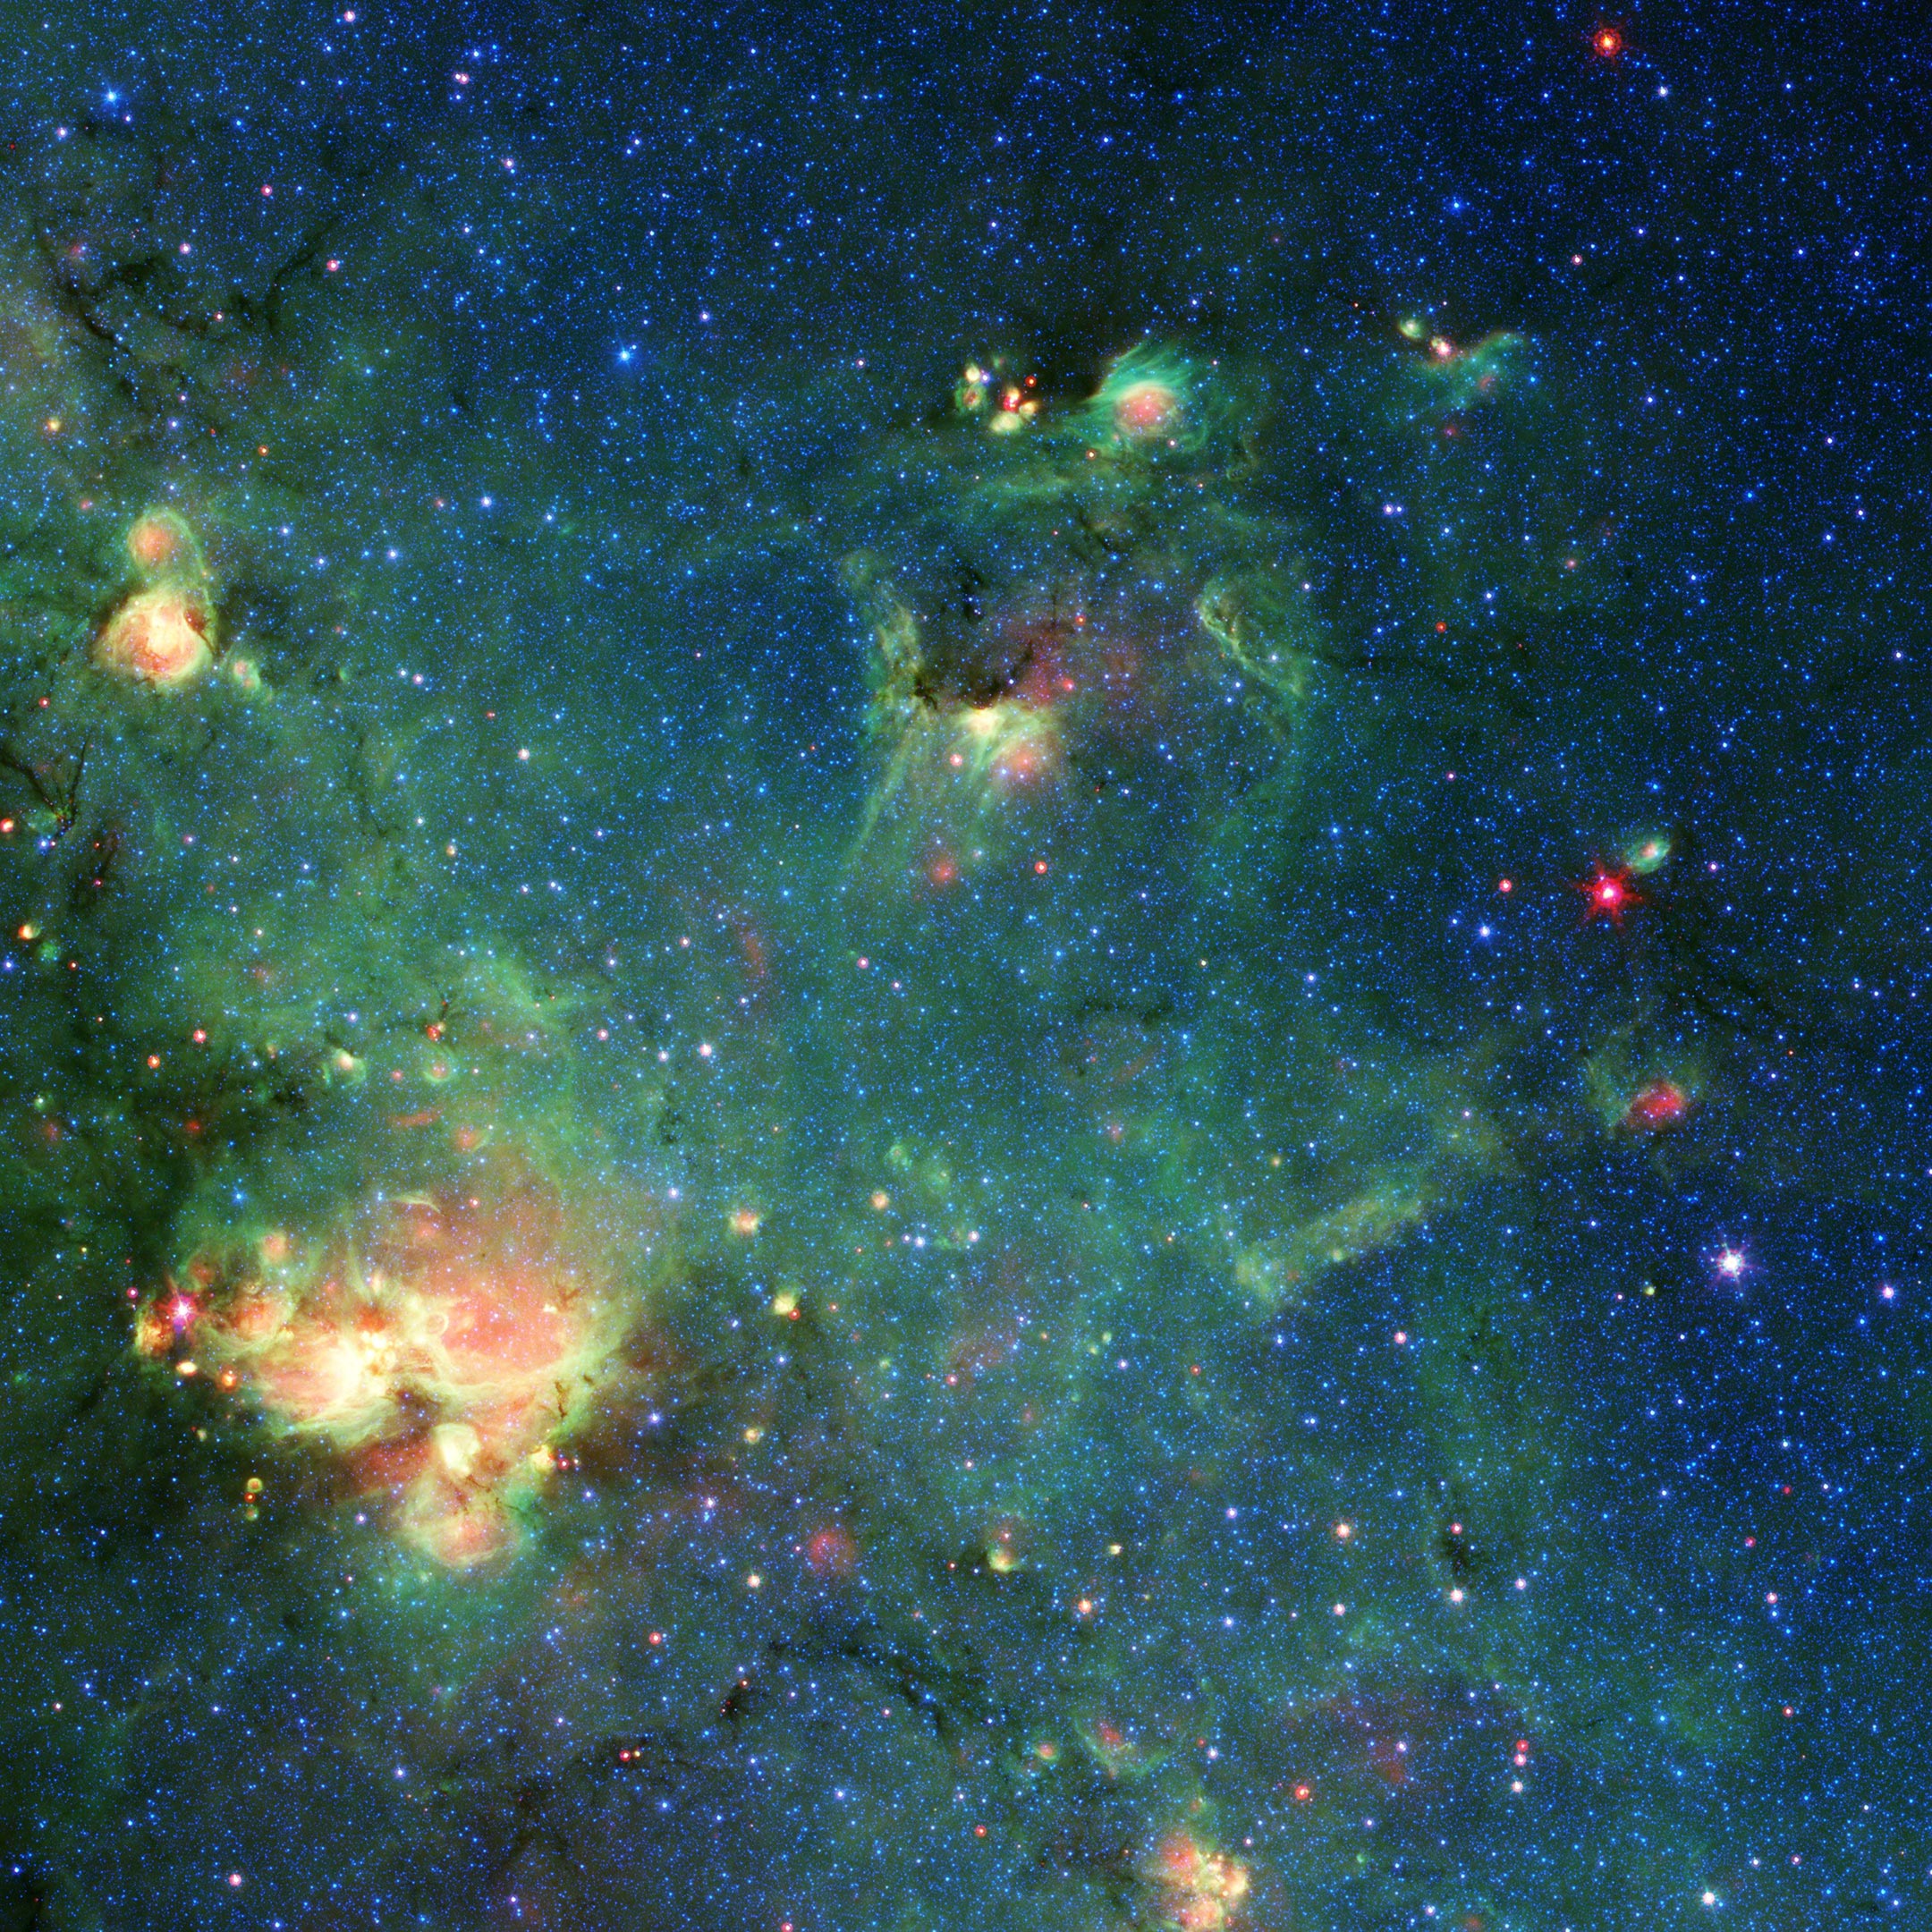 Telescopio espacial Spitzer de la NASA tomó imágenes de esta nube de gas y polvo. Los colores representan diferentes longitudes de onda de luz infrarroja y pueden revelar características tales como lugares donde la radiación de las estrellas había calentado el material circundante. Cualquier parecido con Godzilla es puramente imaginario. Crédito: NASA/JPL-Caltech